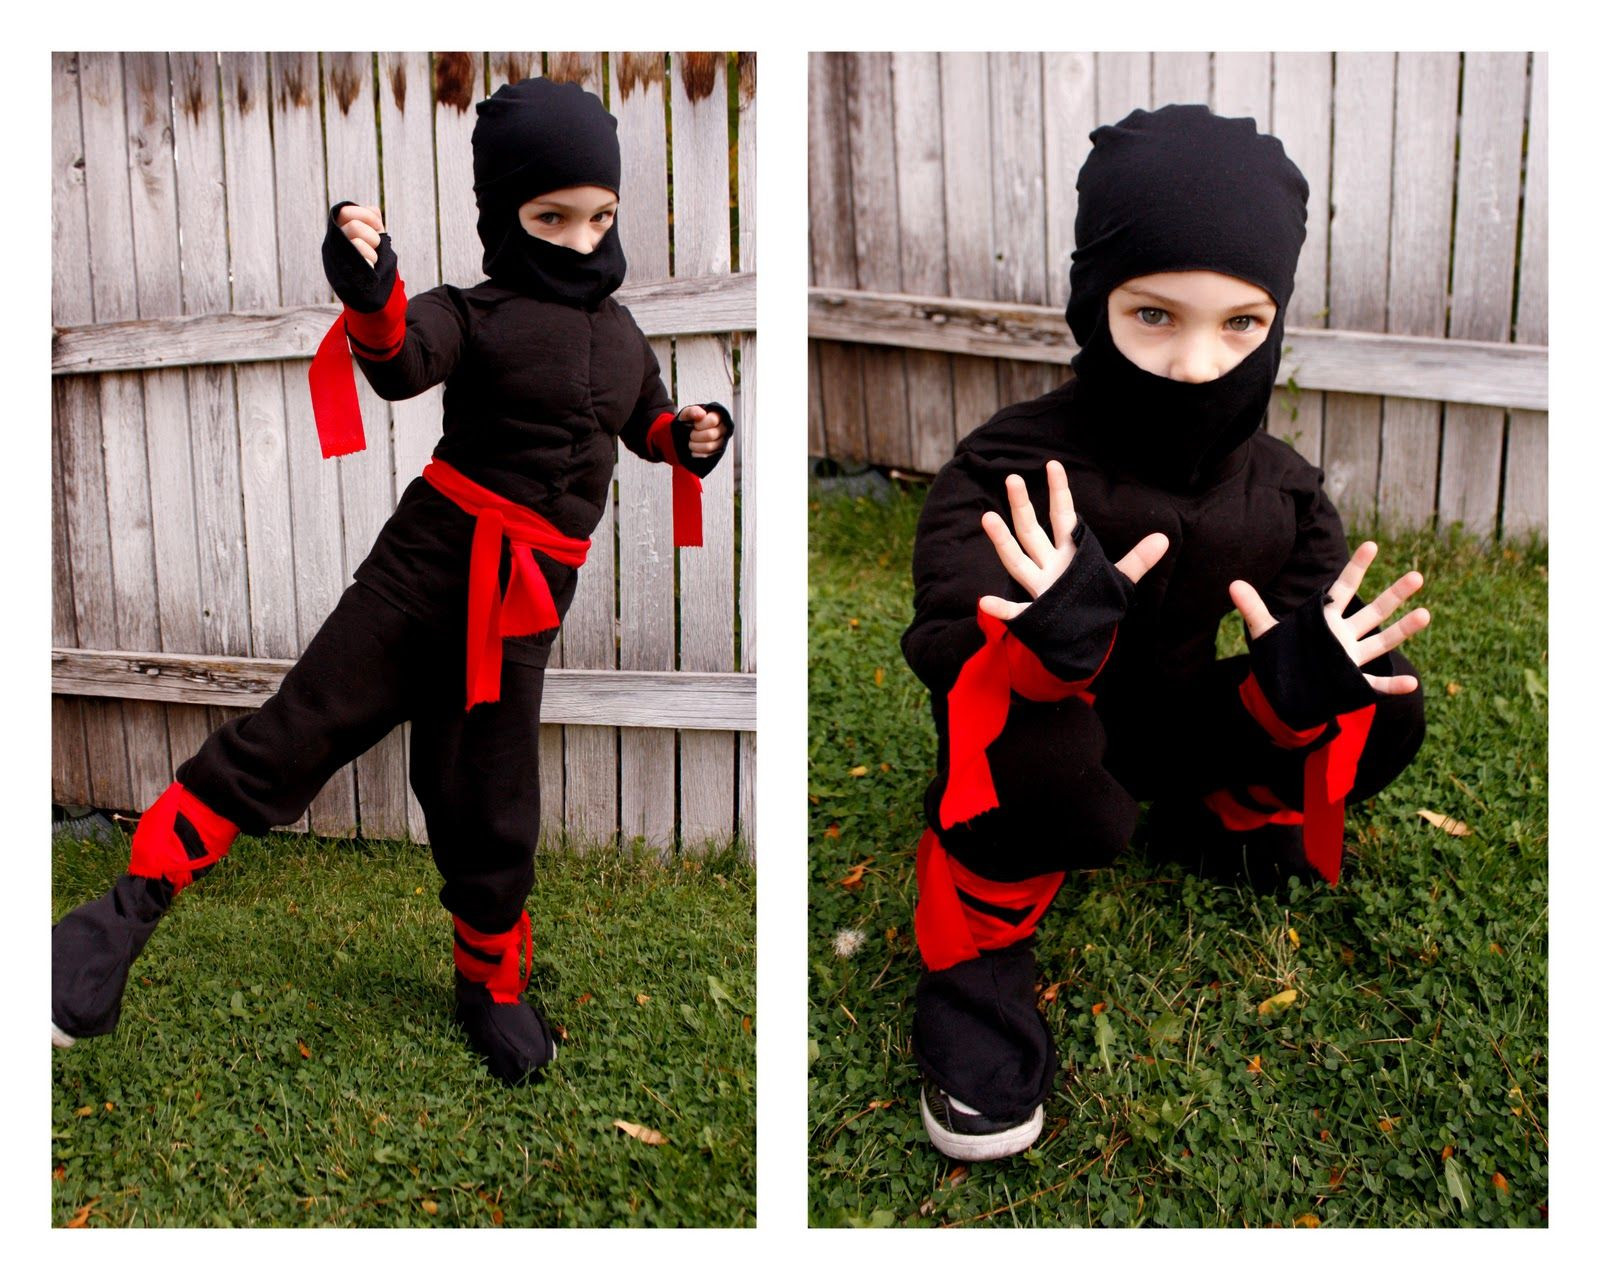 Female Ninja Costume DIY
 The 25 best Ninja costumes ideas on Pinterest